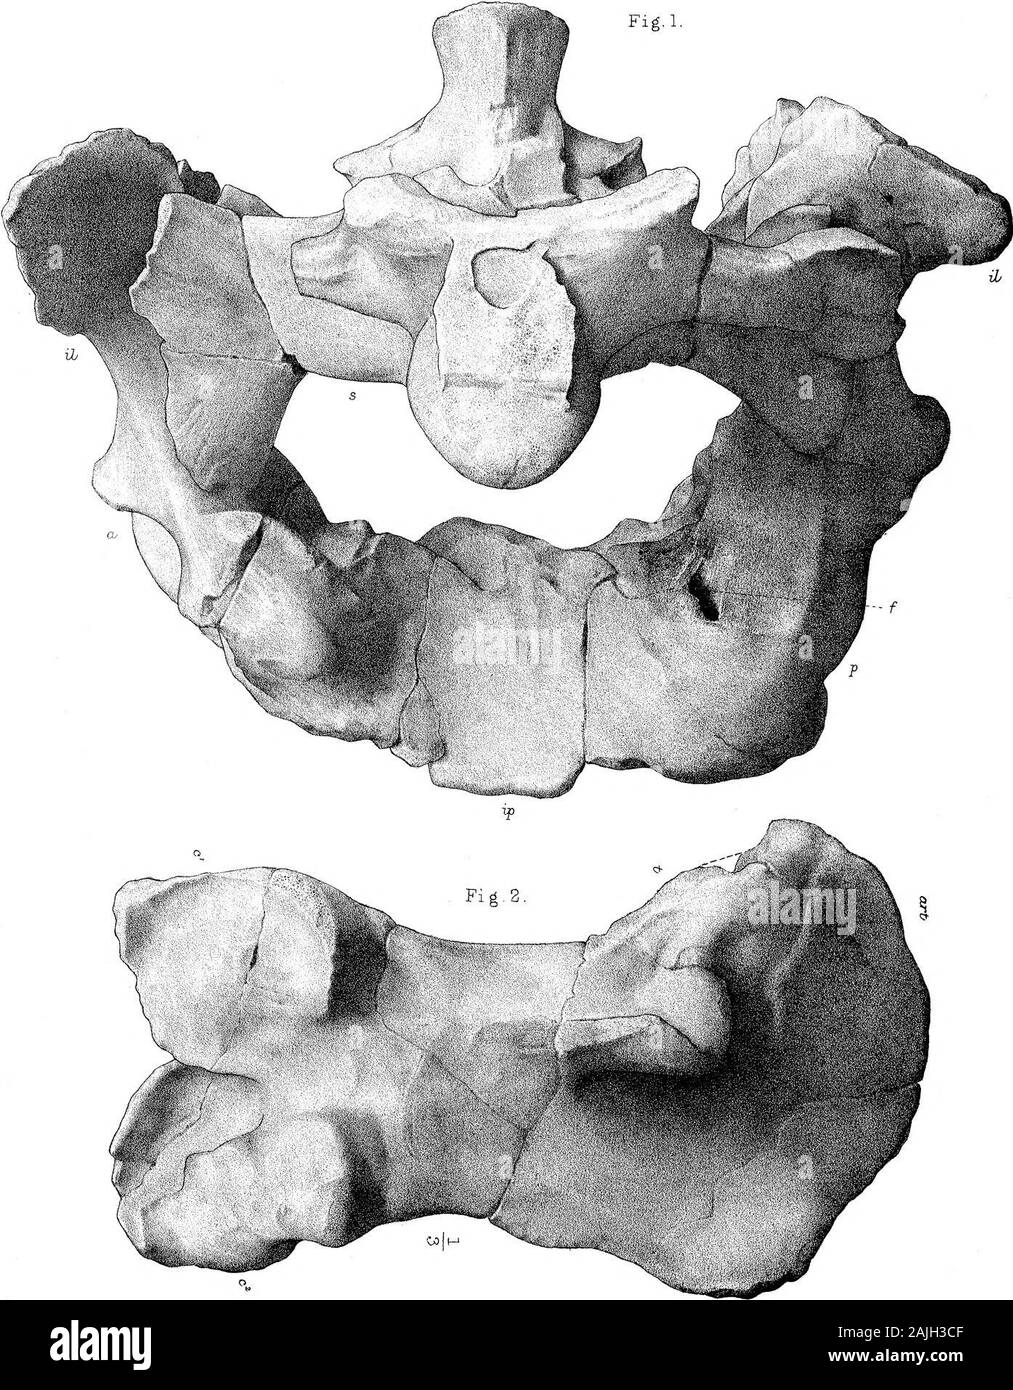 Ricerche sulla struttura, l'organizzazione e la classificazione dei fossili di Reptilia VII ulteriori osservazioni sul Pareiasaurus . G JOVboclward, actualJith. West,NewmaTi, PIM, Sacrum e Pelvi Pareiasaurus Baini, Seeley. Pkil.Trcms.Rm2.B.I&GT;tardi, 22. G.M. Woodward, ad.nat.lith. Pelvi e del femore, Pareiasaurus Baini. West,Newmaui, ixwp. Seeley. PhiLTrcuns. 1892 JEL piastra, 2 3 Fig.3 Foto Stock